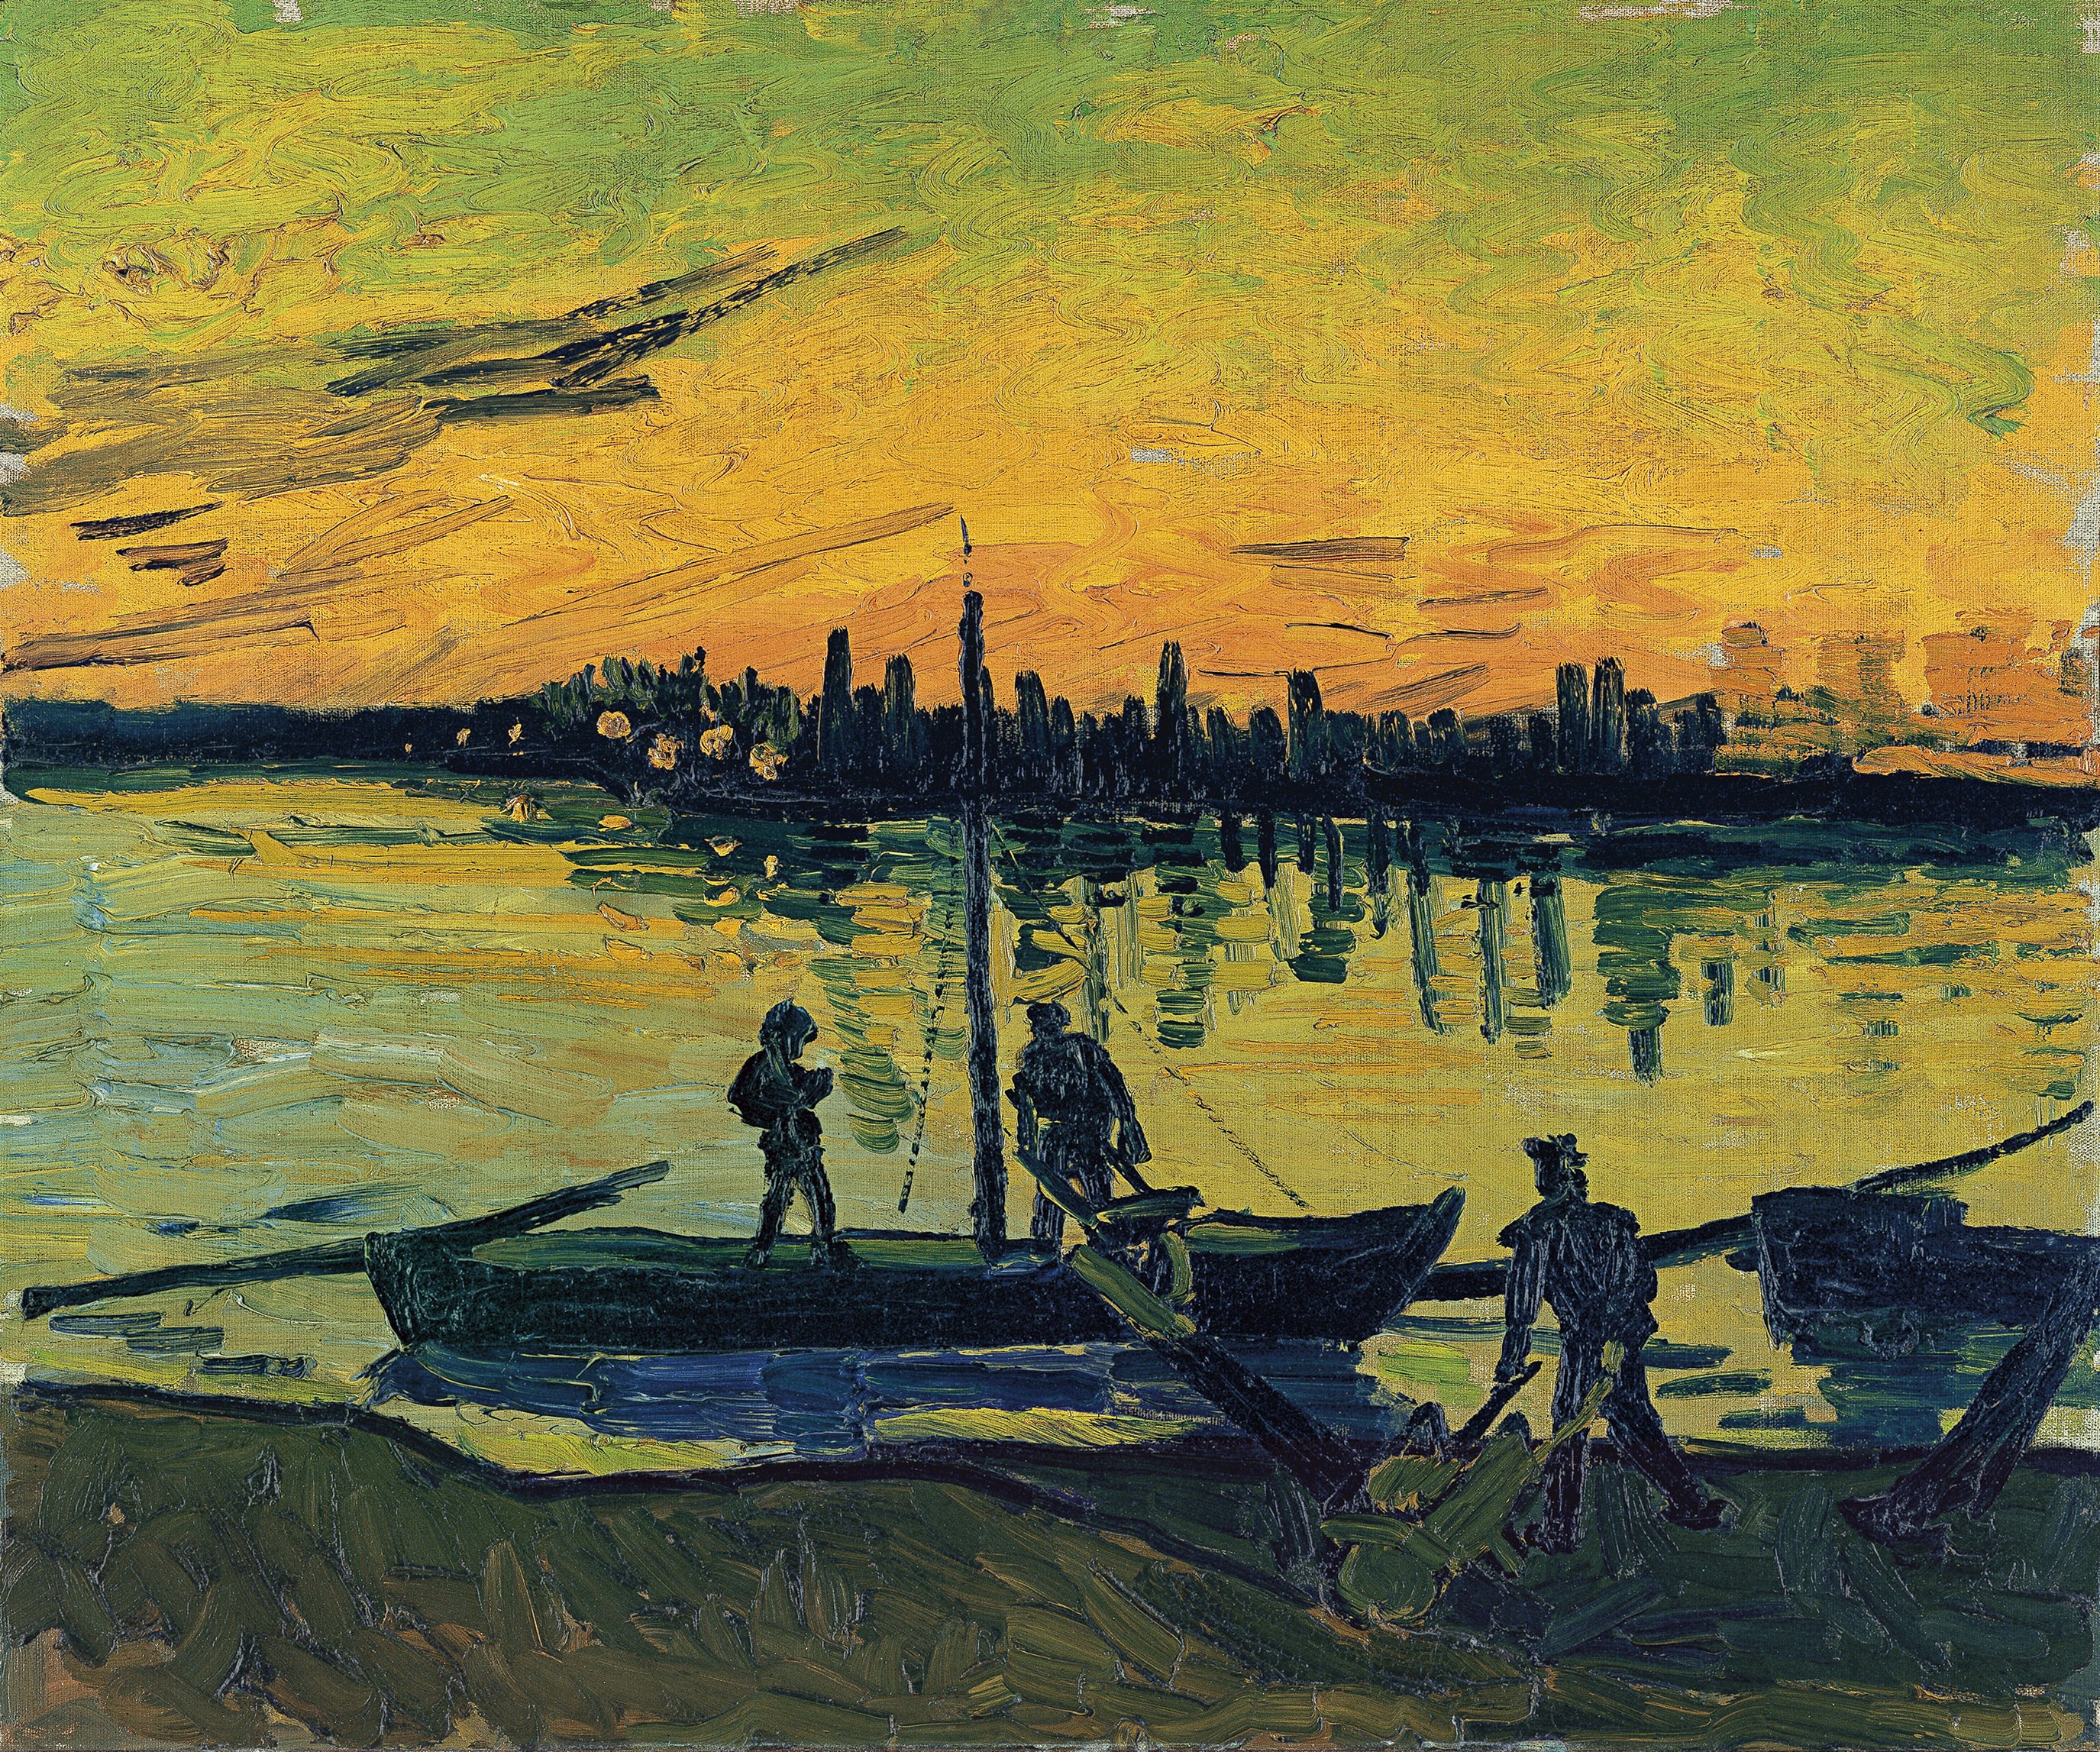 Arles'daki Gemi Yükleme İşçileri by Vincent van Gogh - 1888 - 54 x 65 cm 